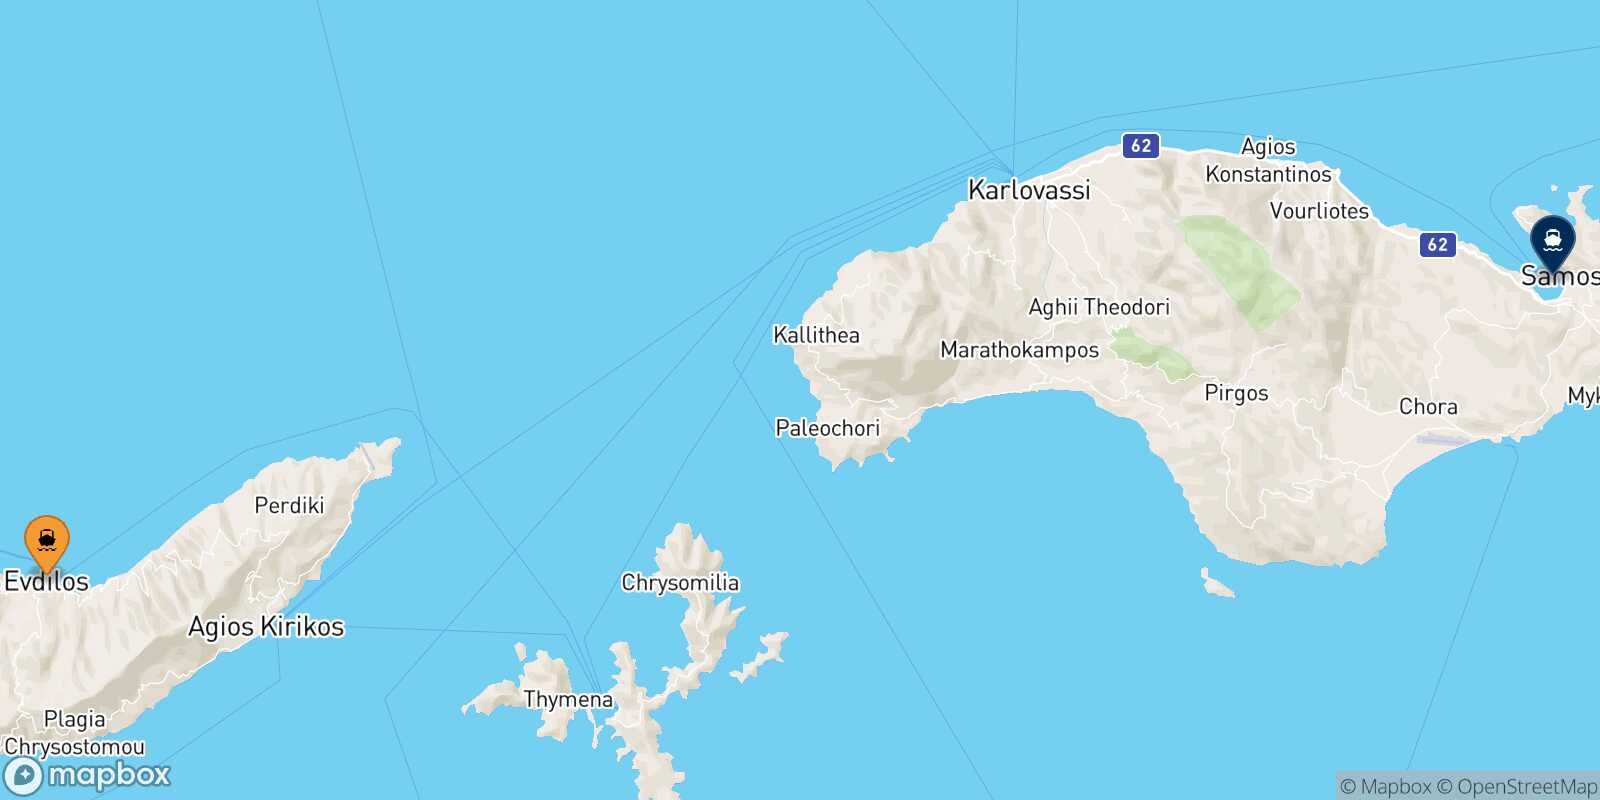 Agios Kirikos (Ikaria) Vathi (Samos) route map